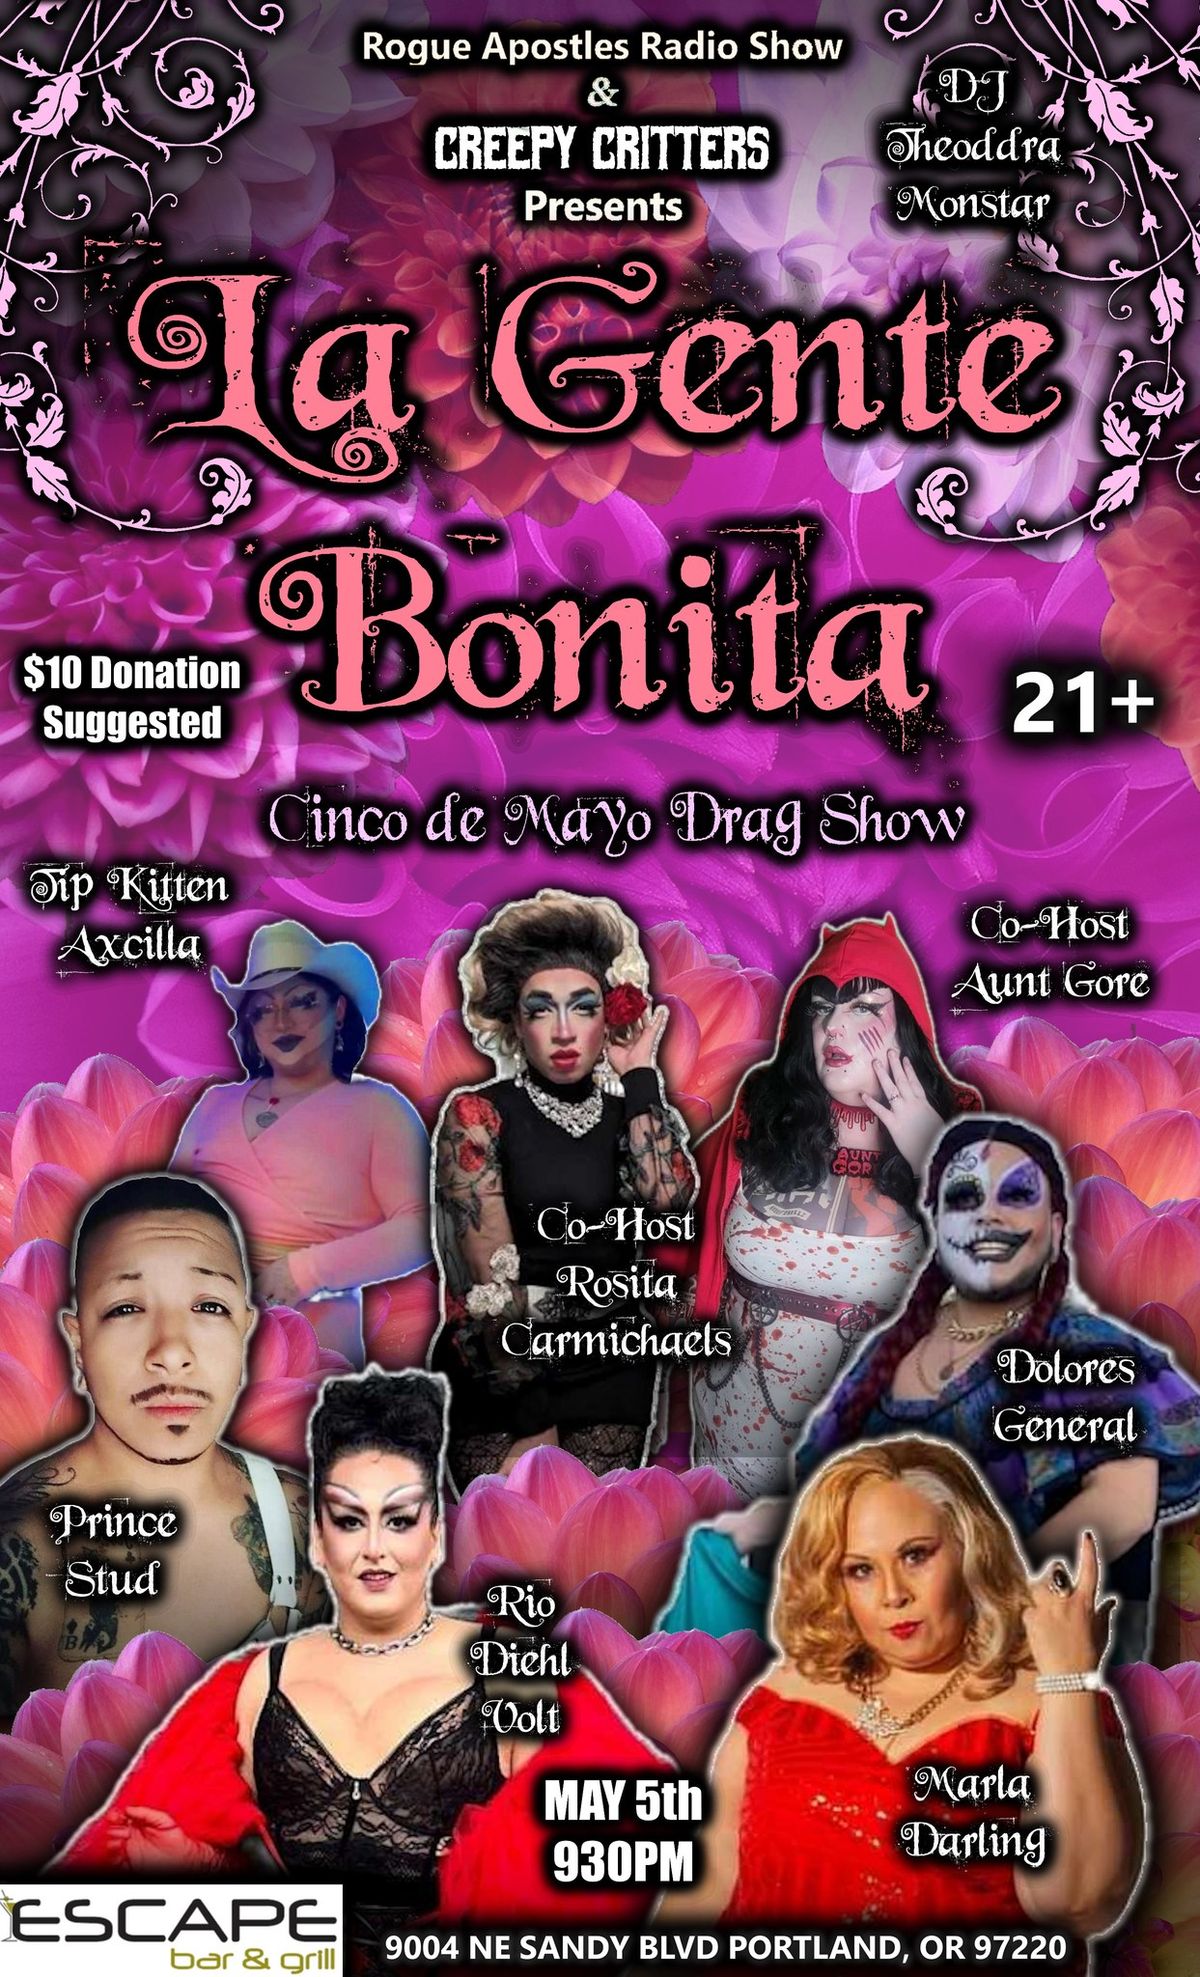 Creepy Critters presents: La Gente Bonita Cinco de Mayo Drag Show